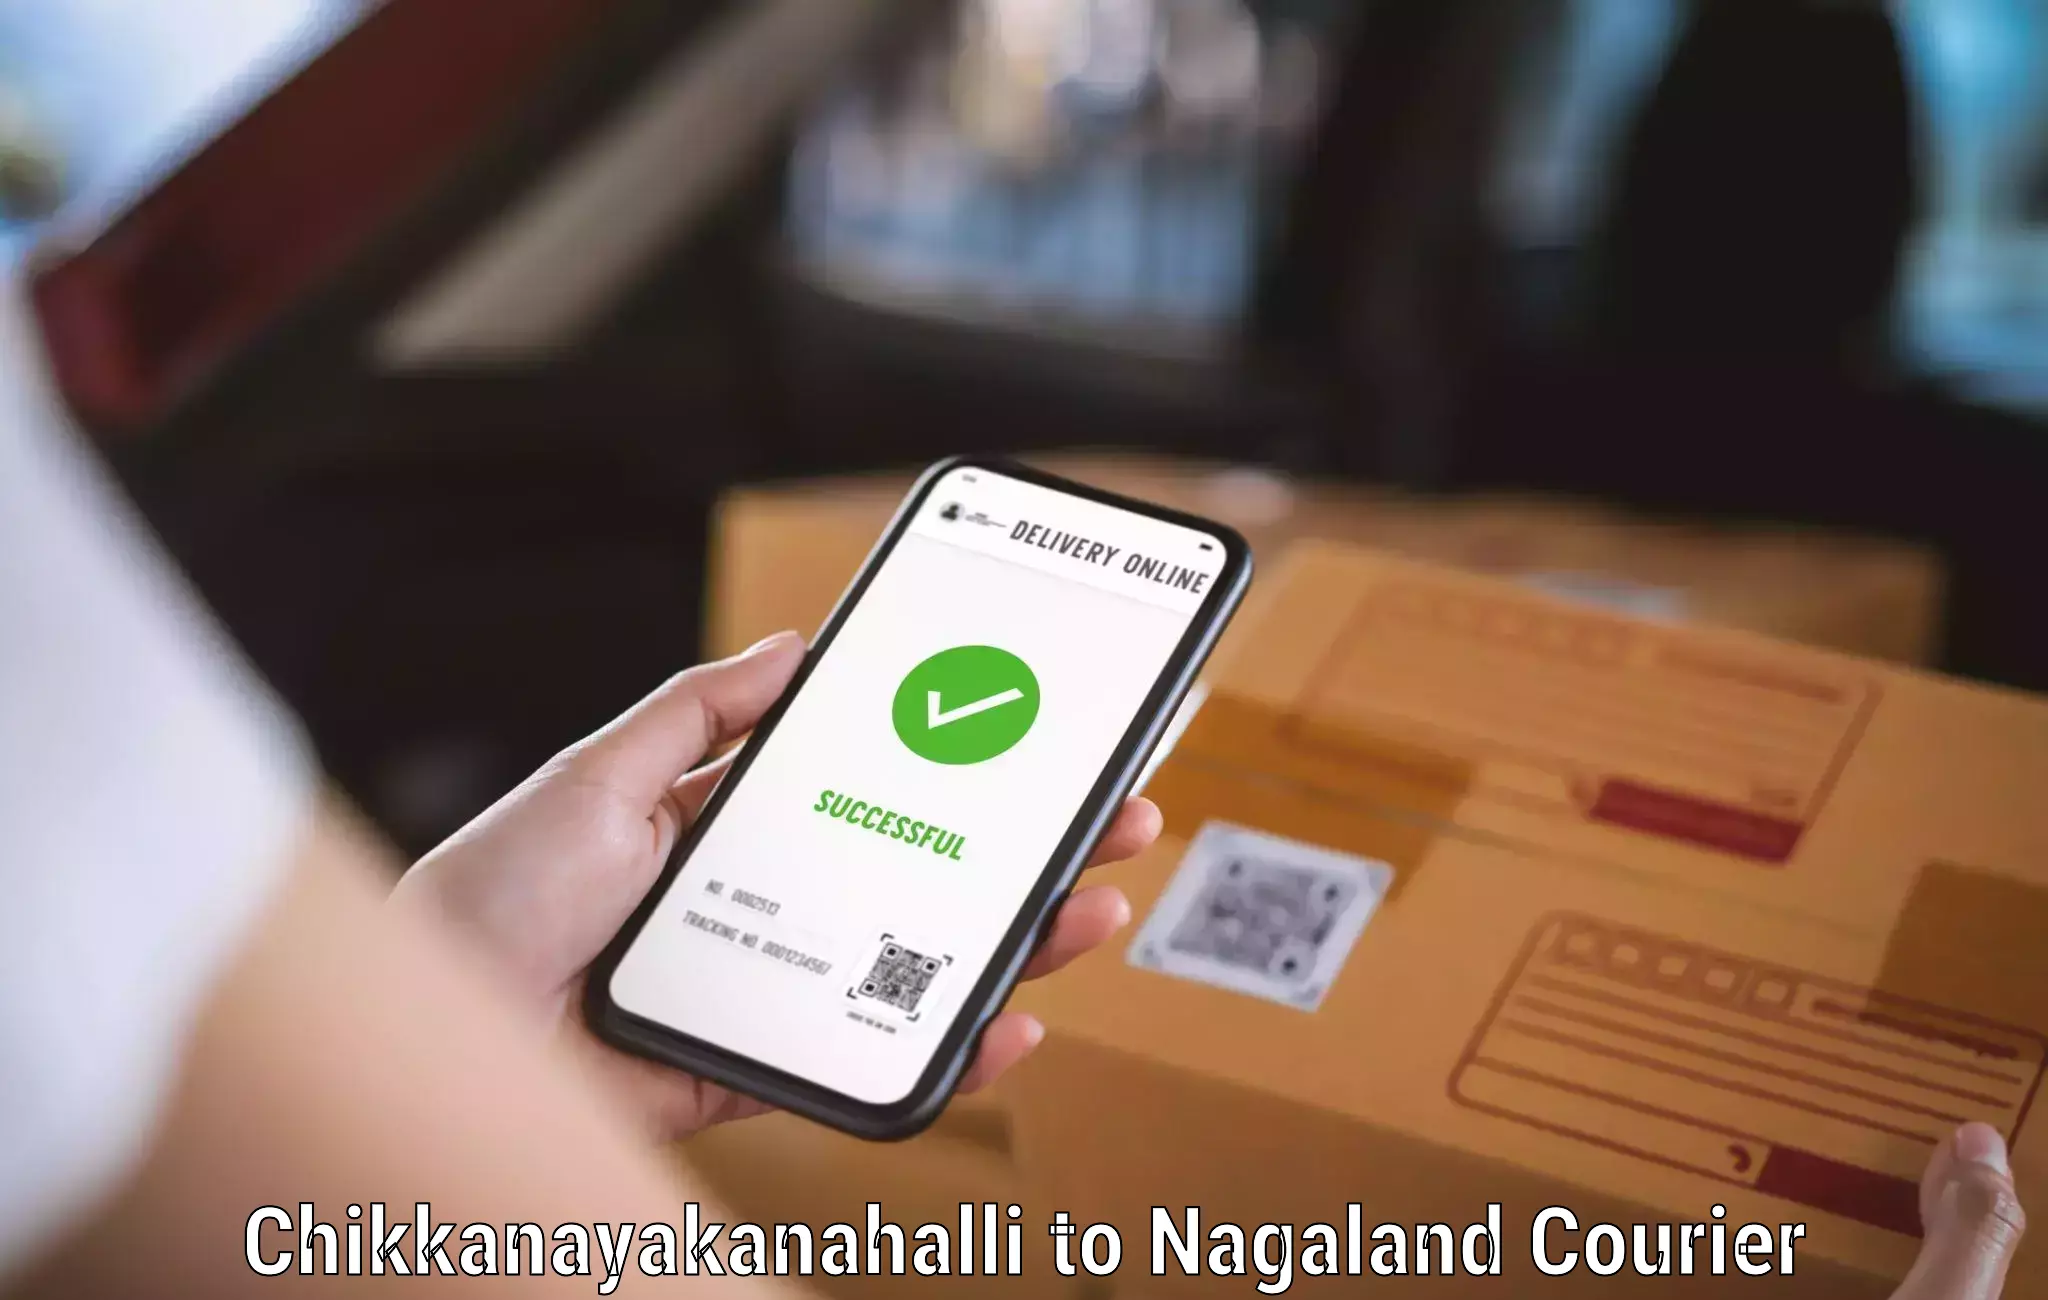 Easy access courier services Chikkanayakanahalli to Mokokchung